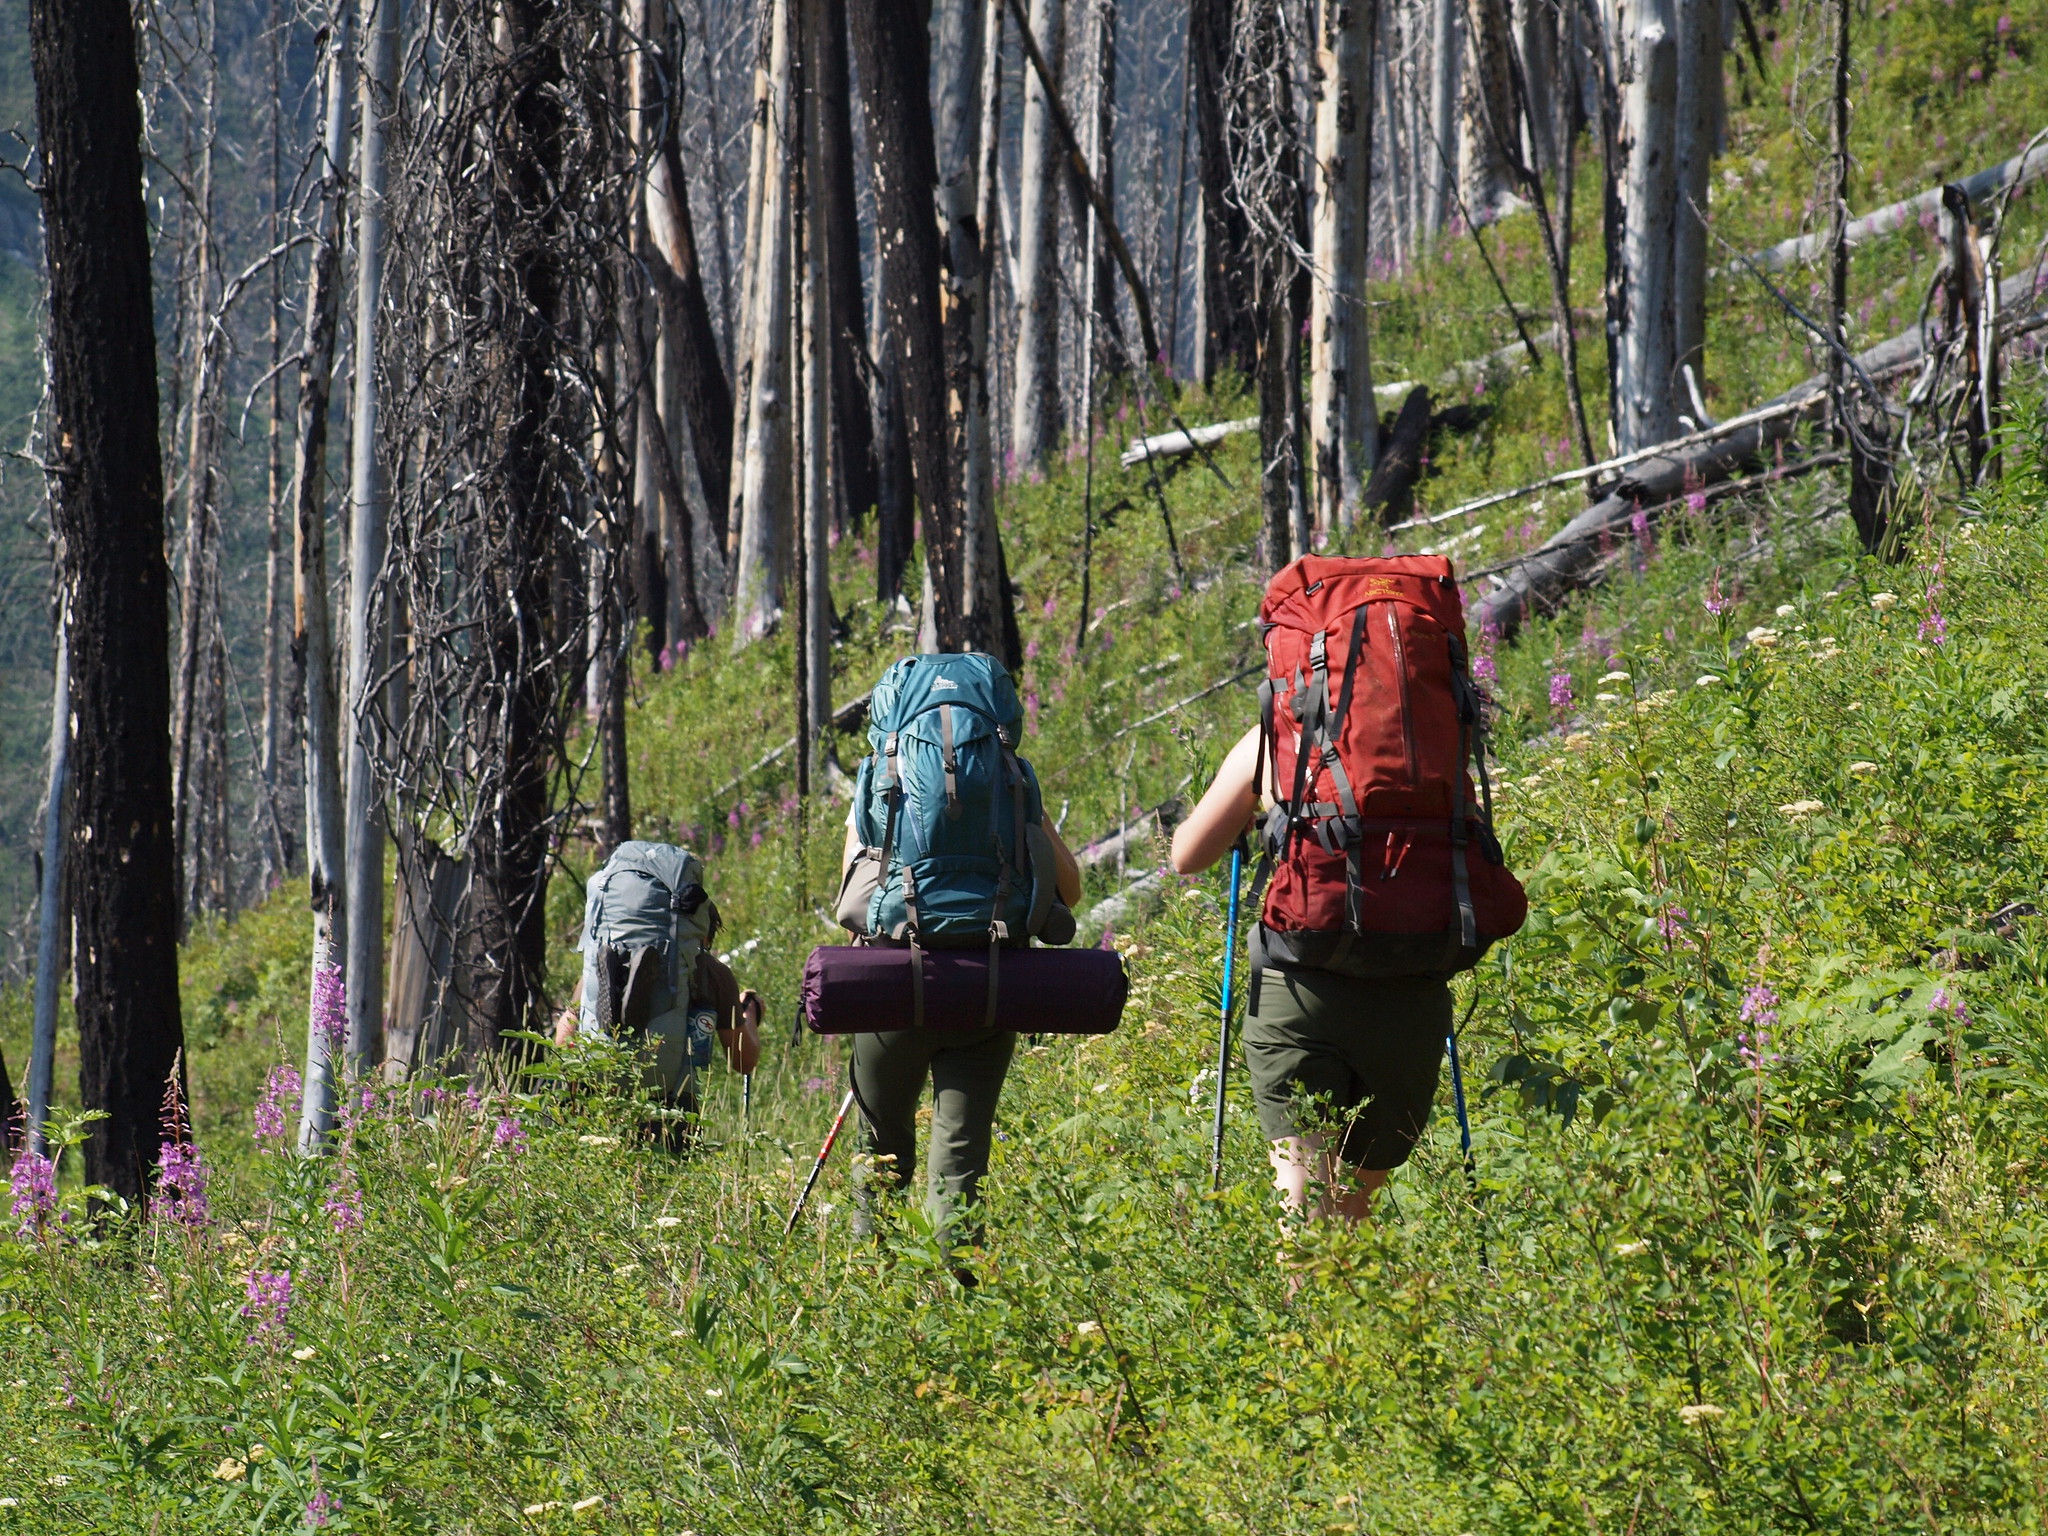 Personas que llevan mochilas grandes caminan por un bosque.